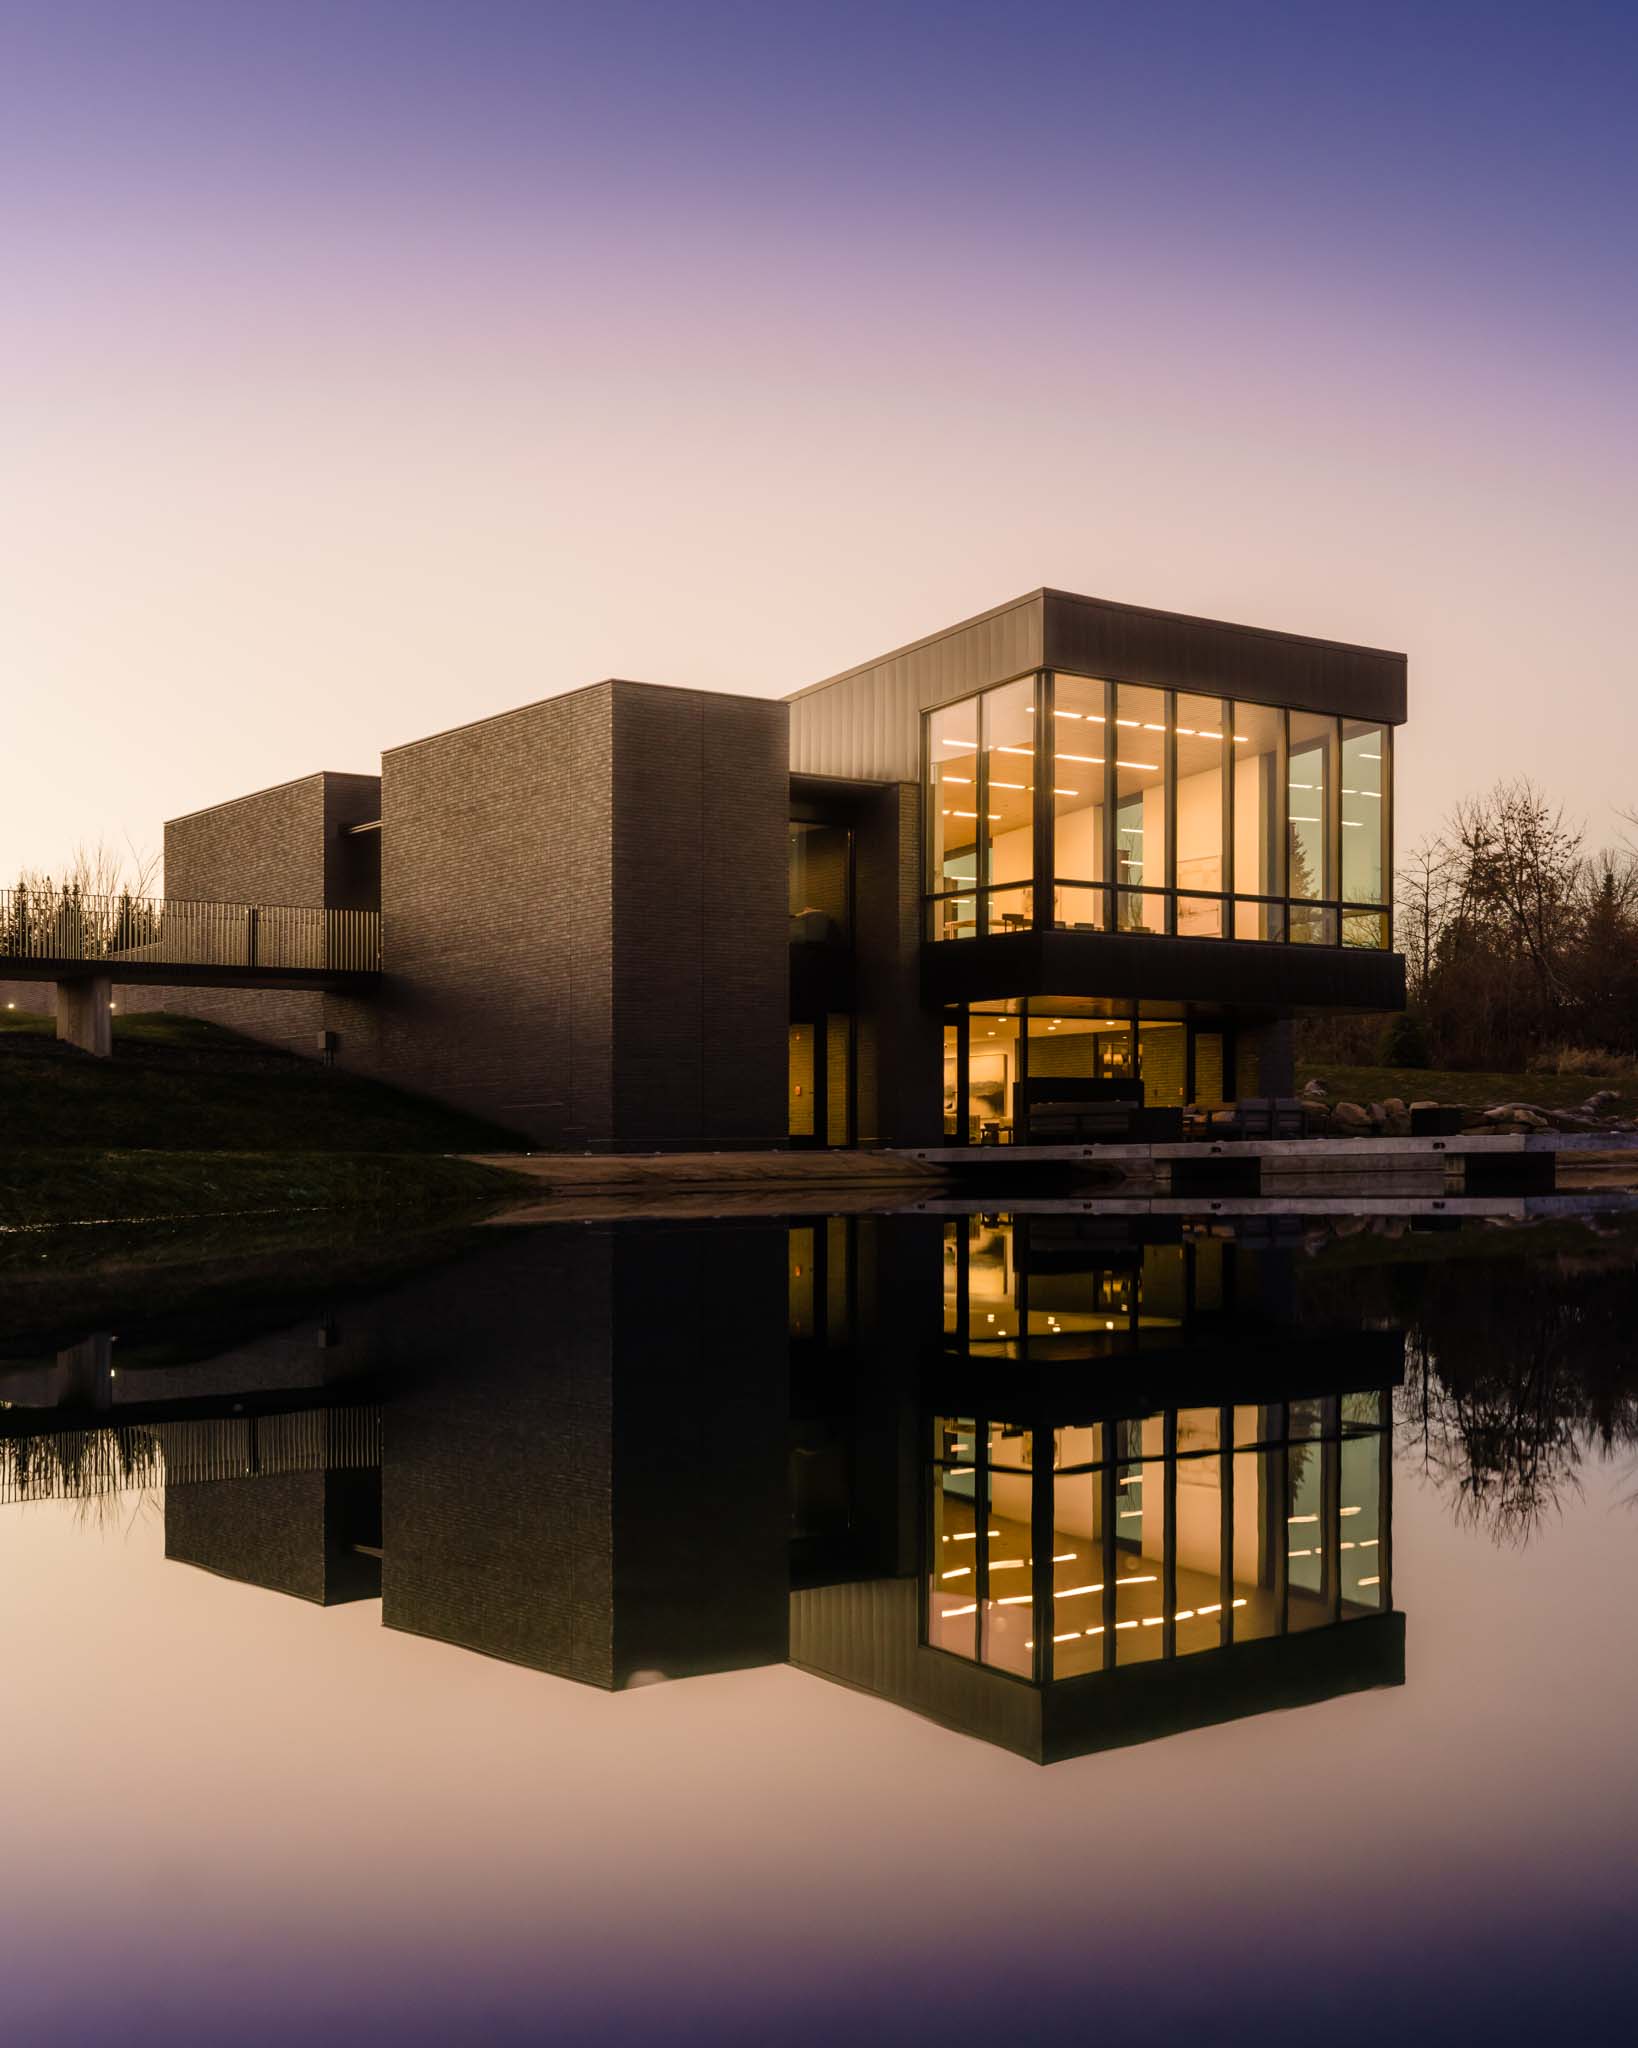 Des Moines, Iowa architectural photographer